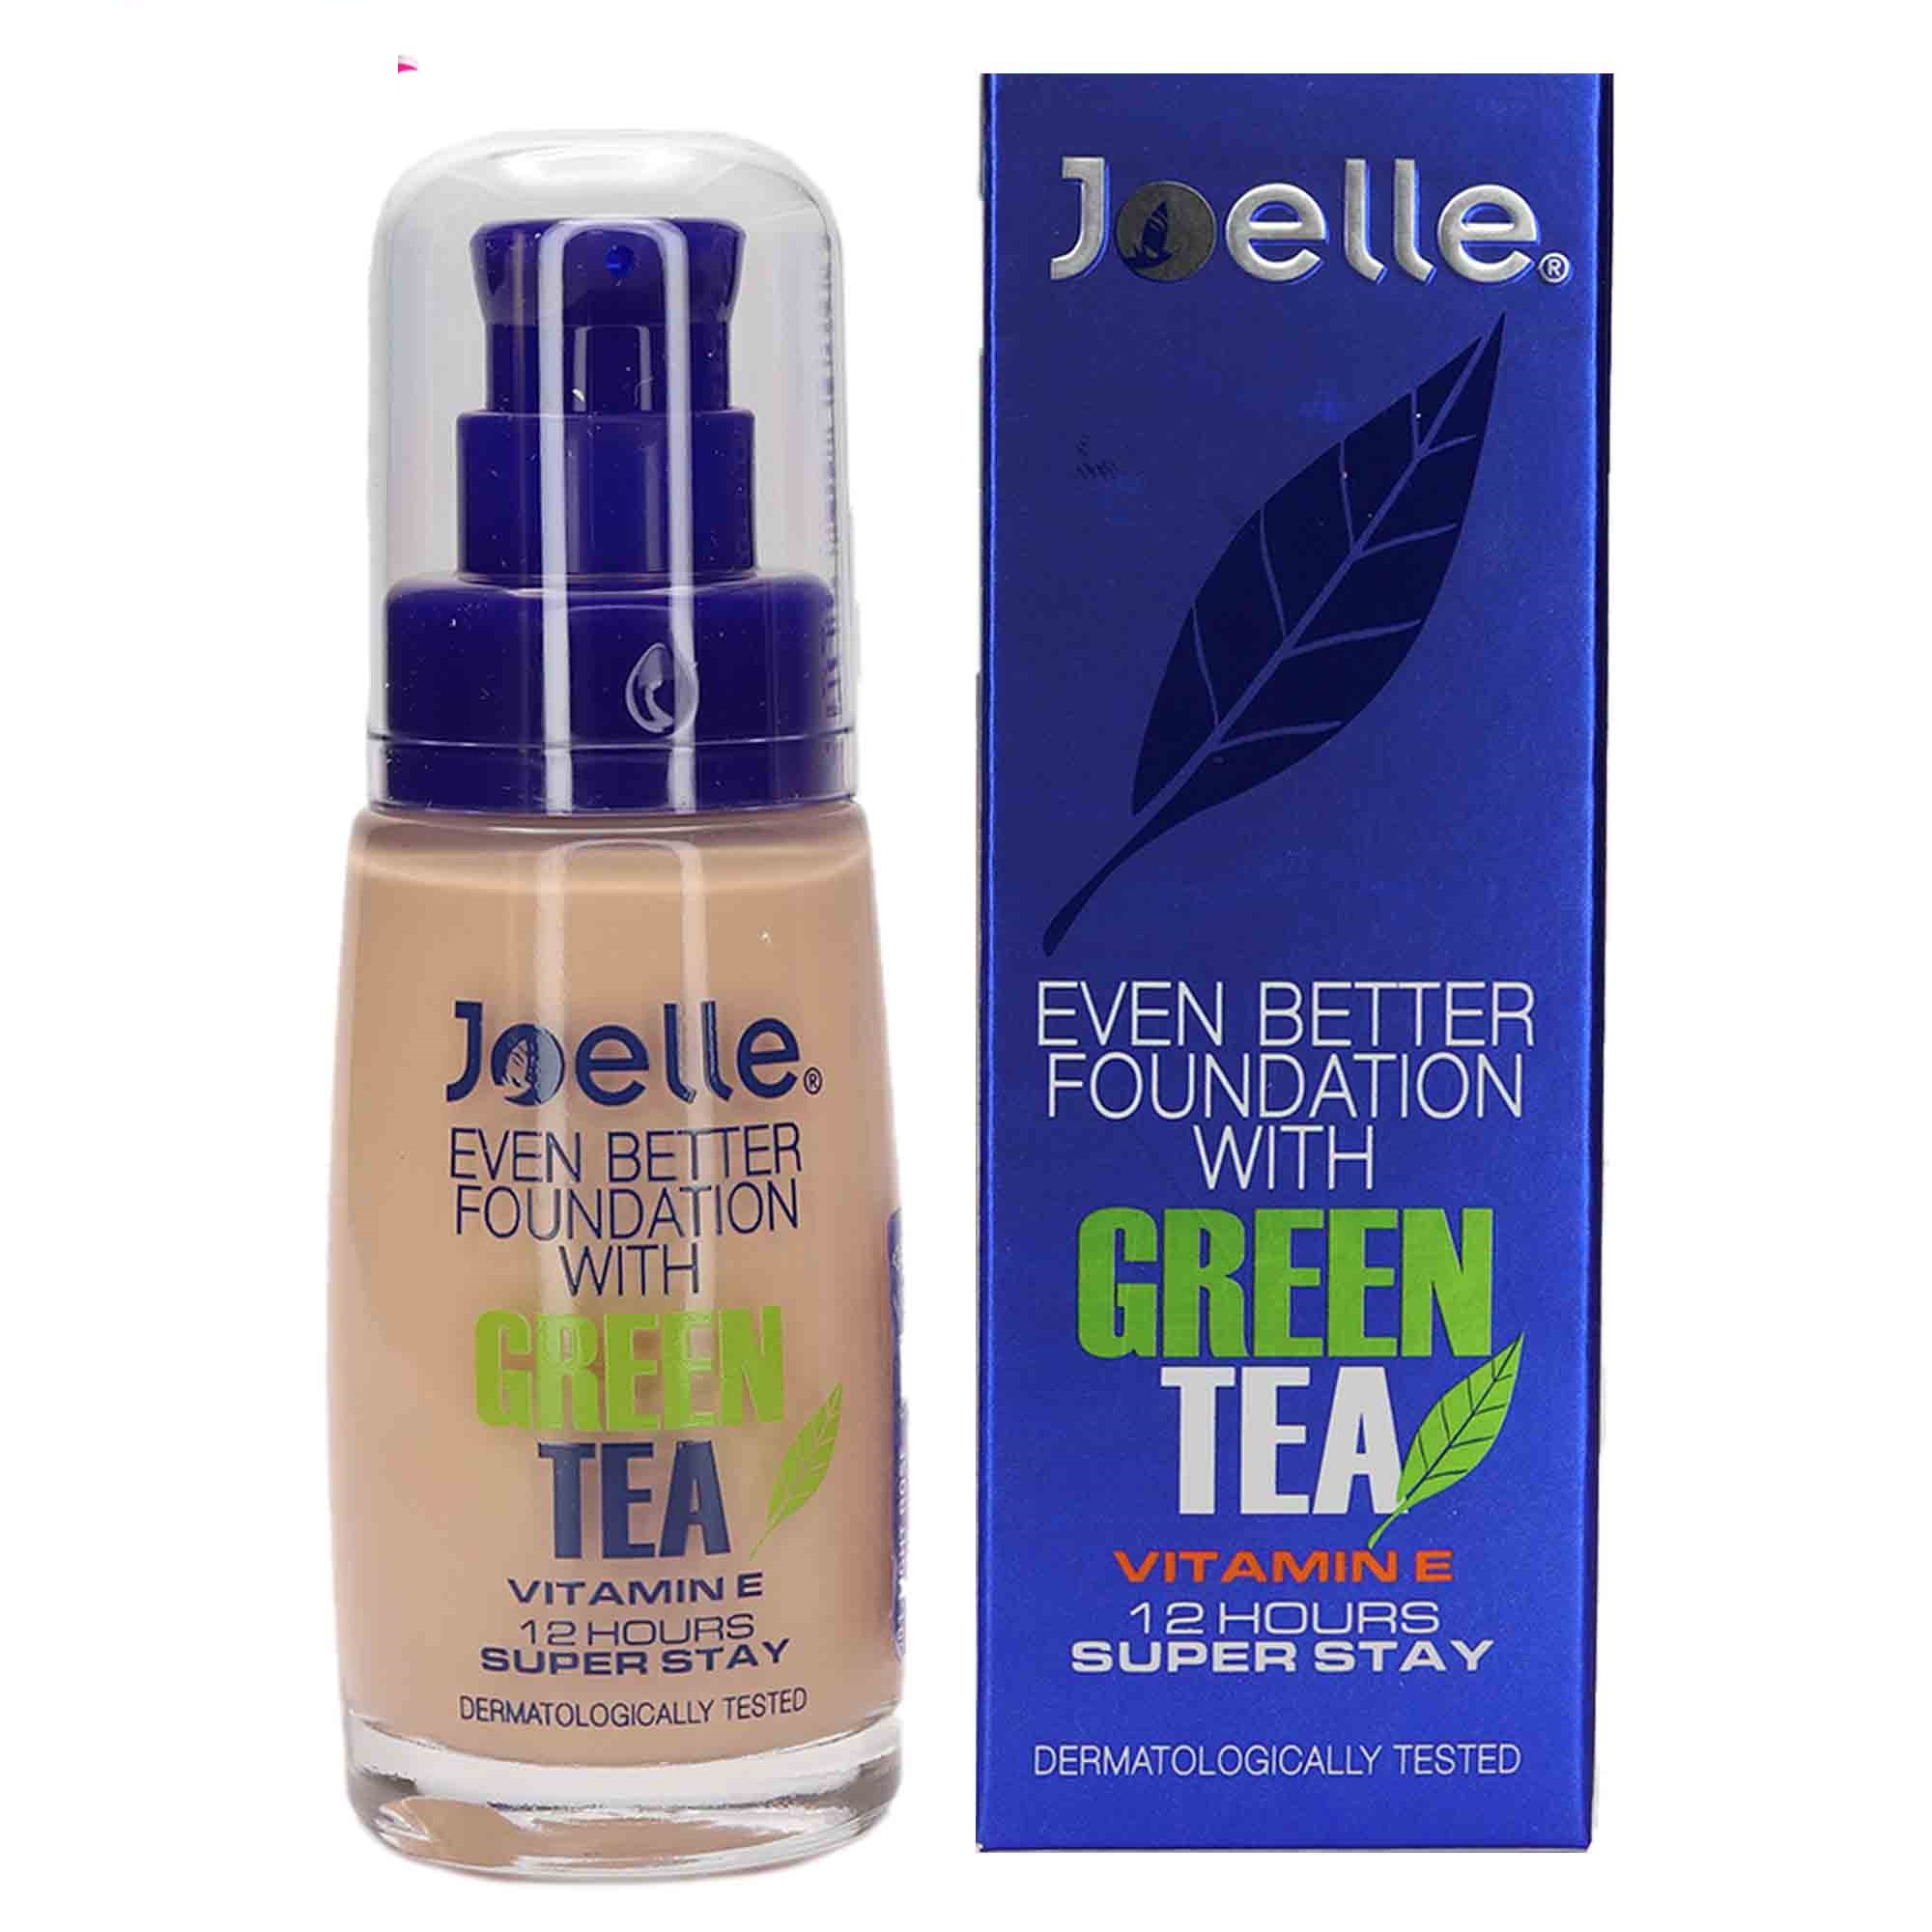 Joel powder cream 01 with green tea extract - Joelle